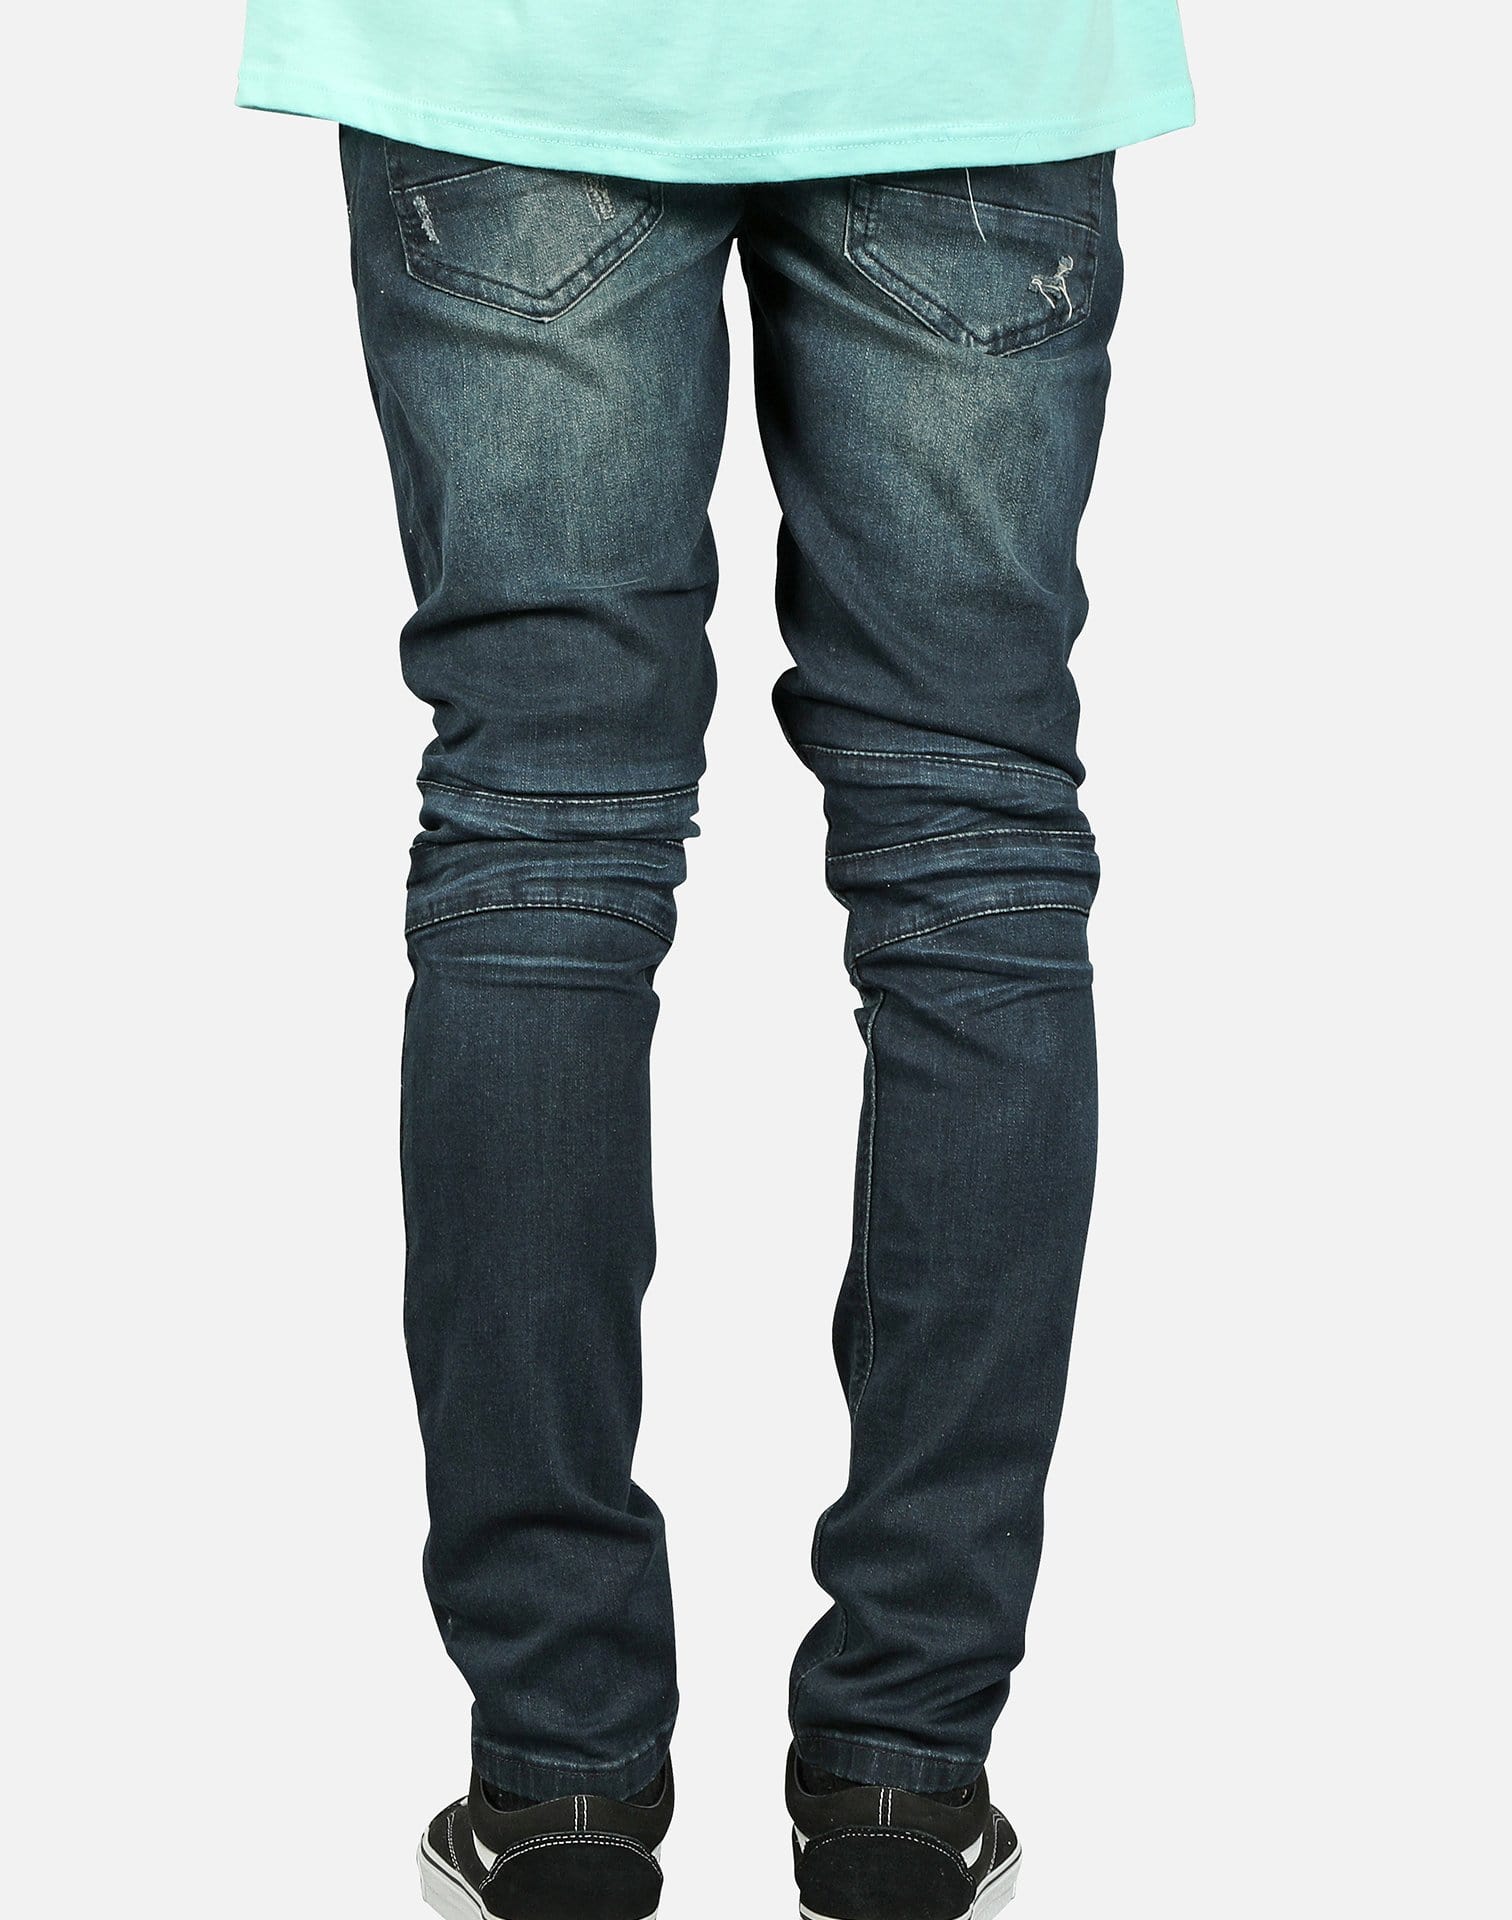 Kilogram Inc. Men's Zip Pocket Moto Jeans